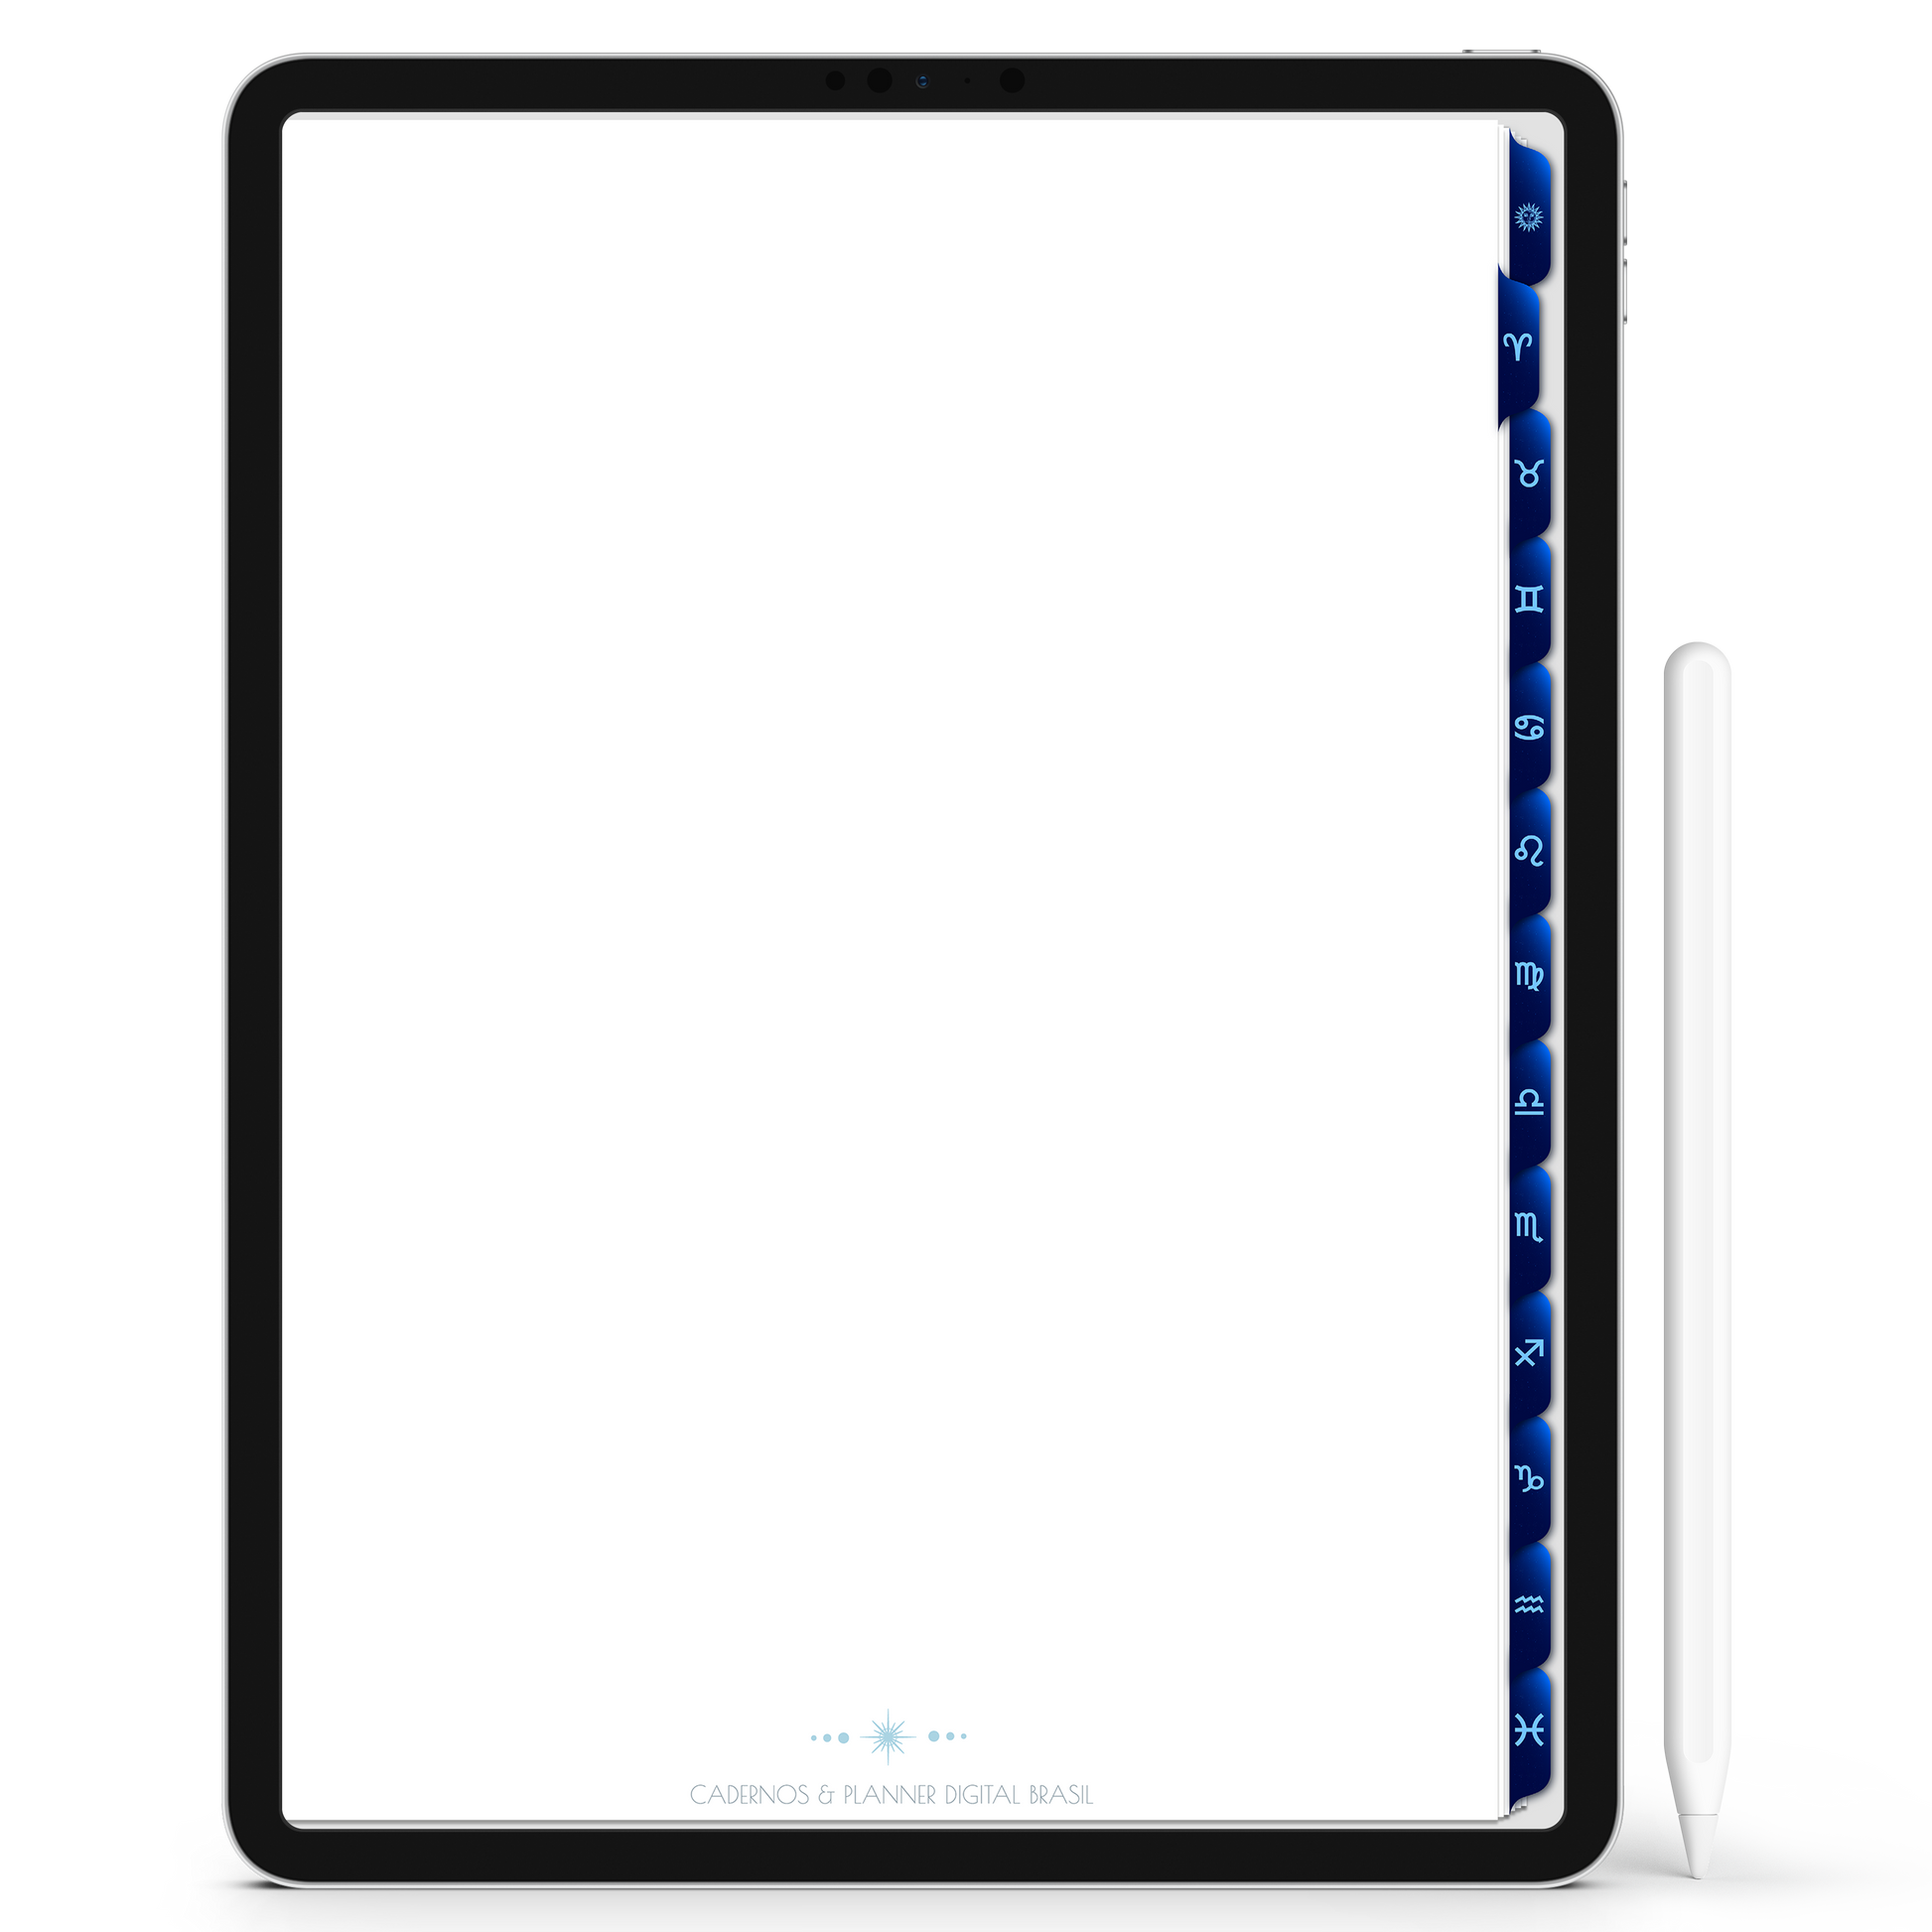 Caderno Digital Constelações Signos do Zodíaco 12 Matérias em Constelações Study iPad iOs Tablet Android GoodNotes Noteshelf Sustentável Cadernos & Planner Digital Brasil